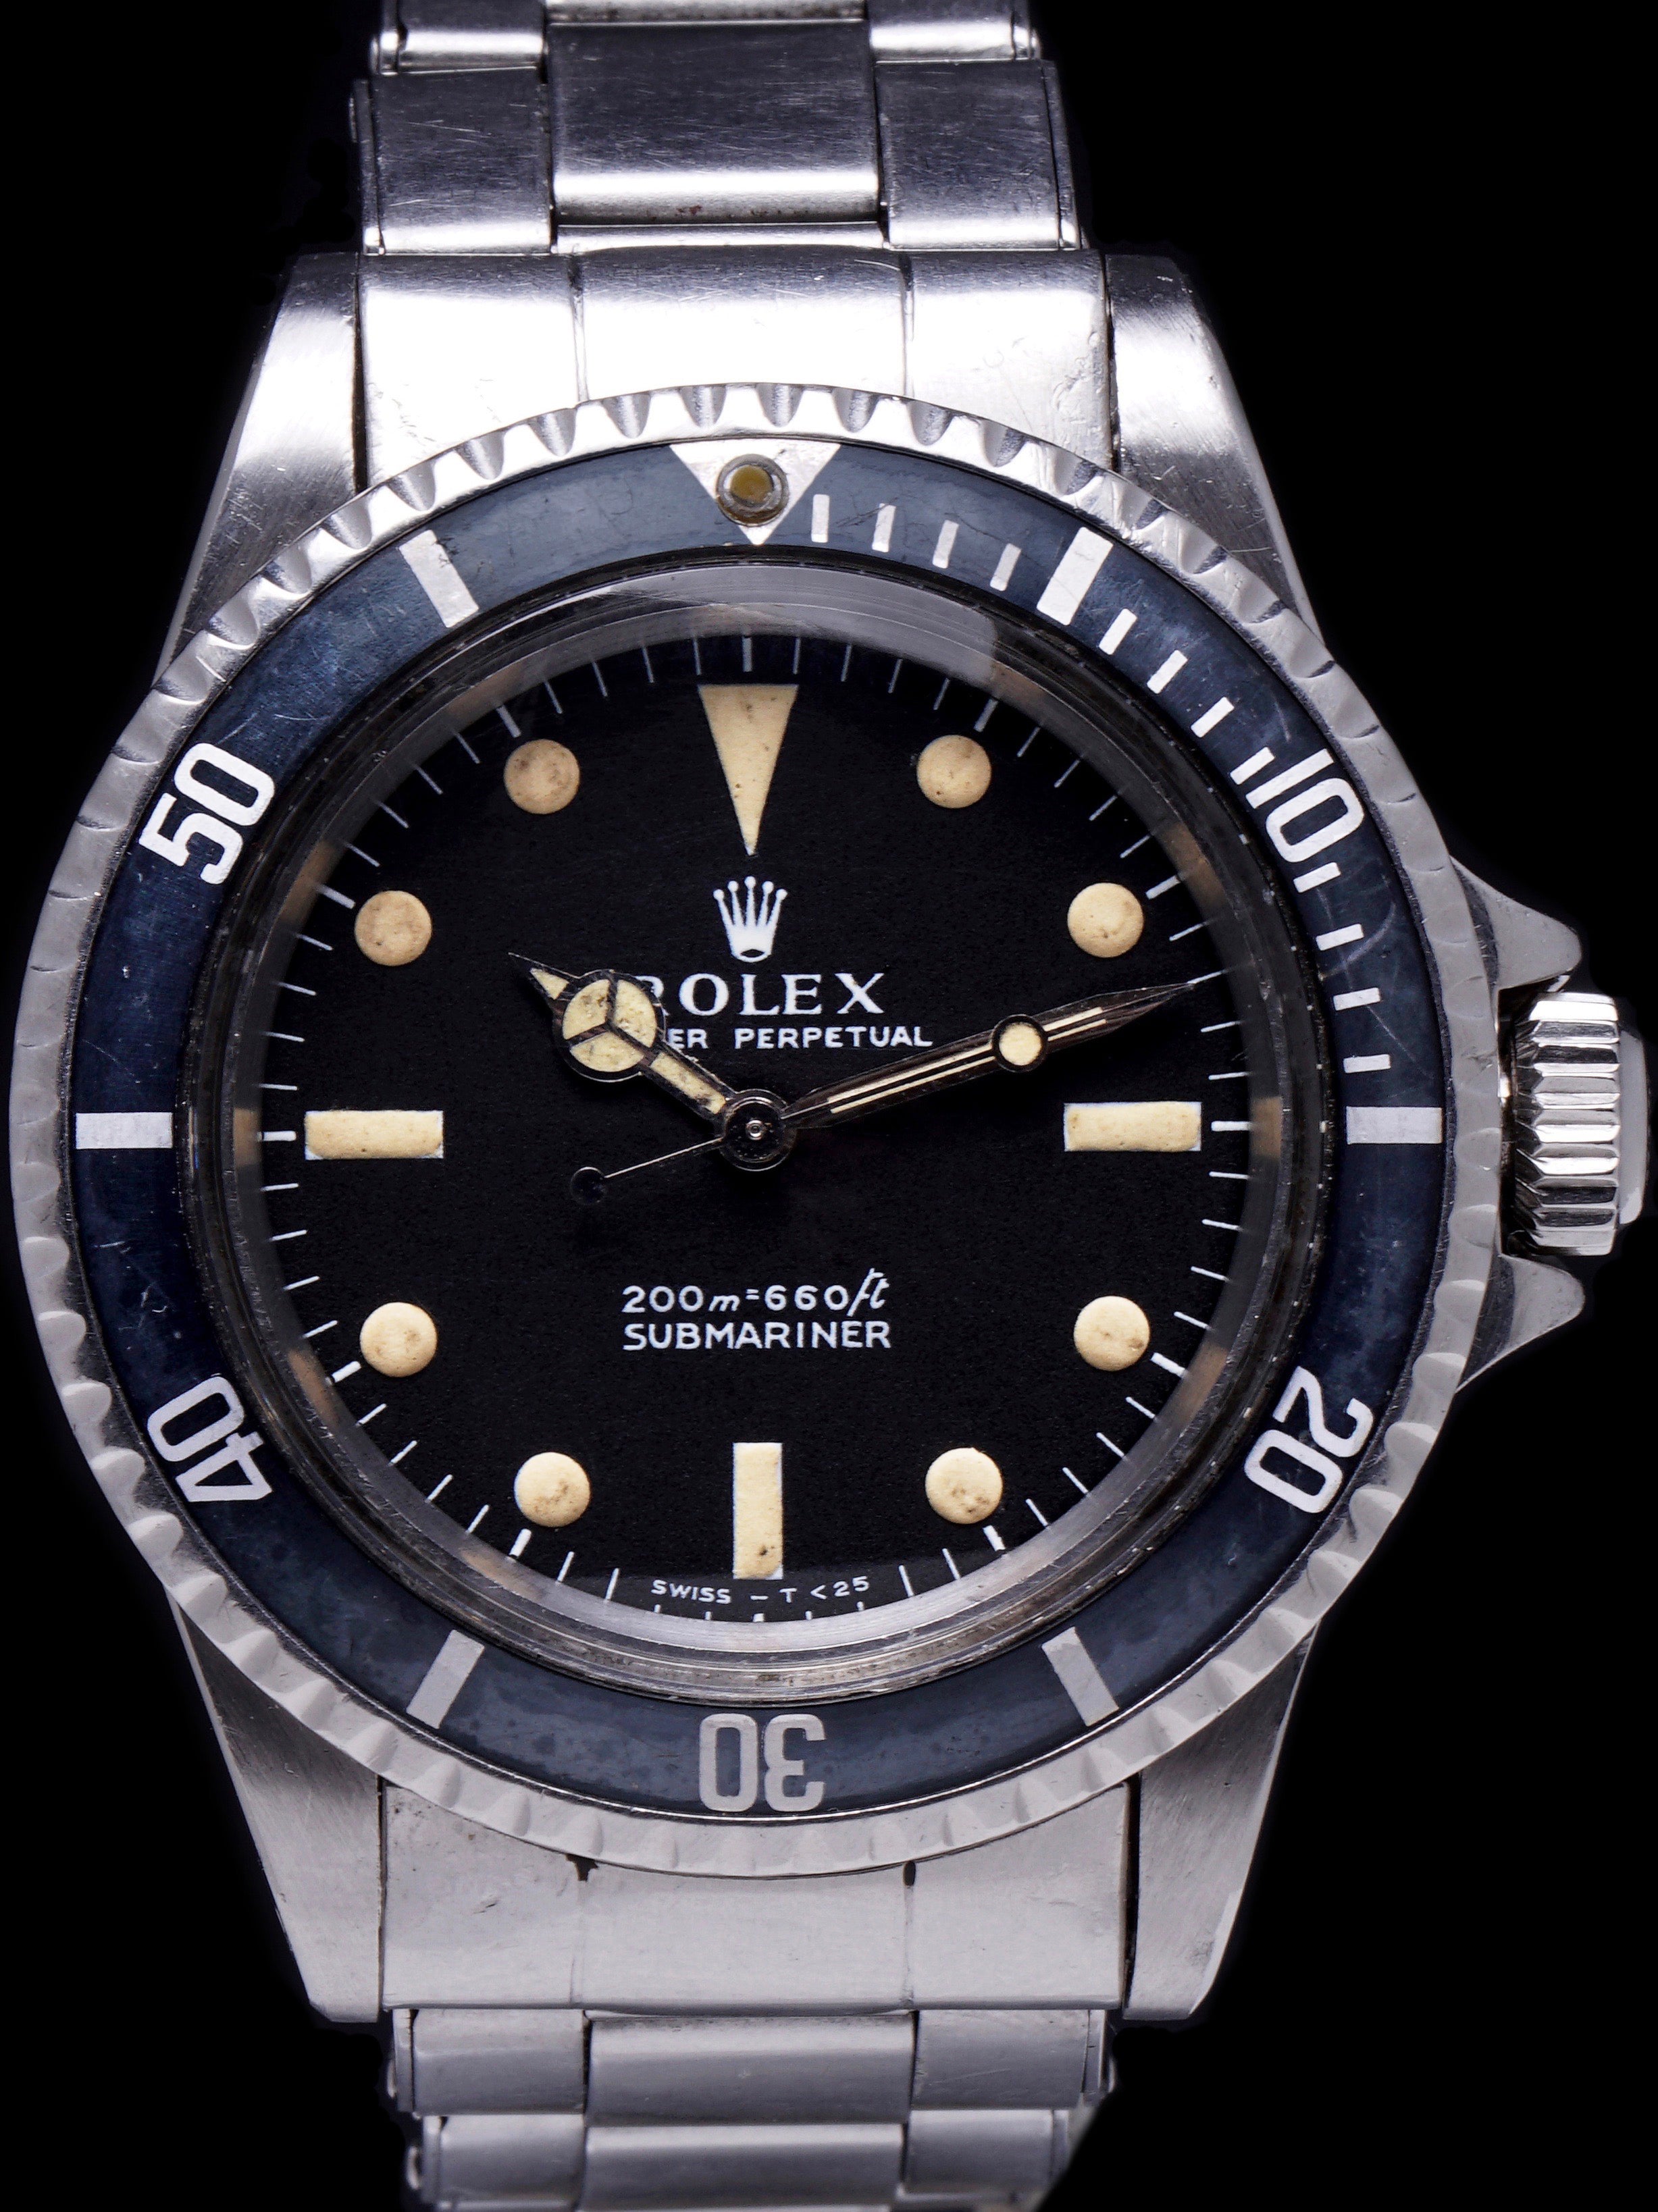 1969 Rolex Submariner (Ref. 5513 